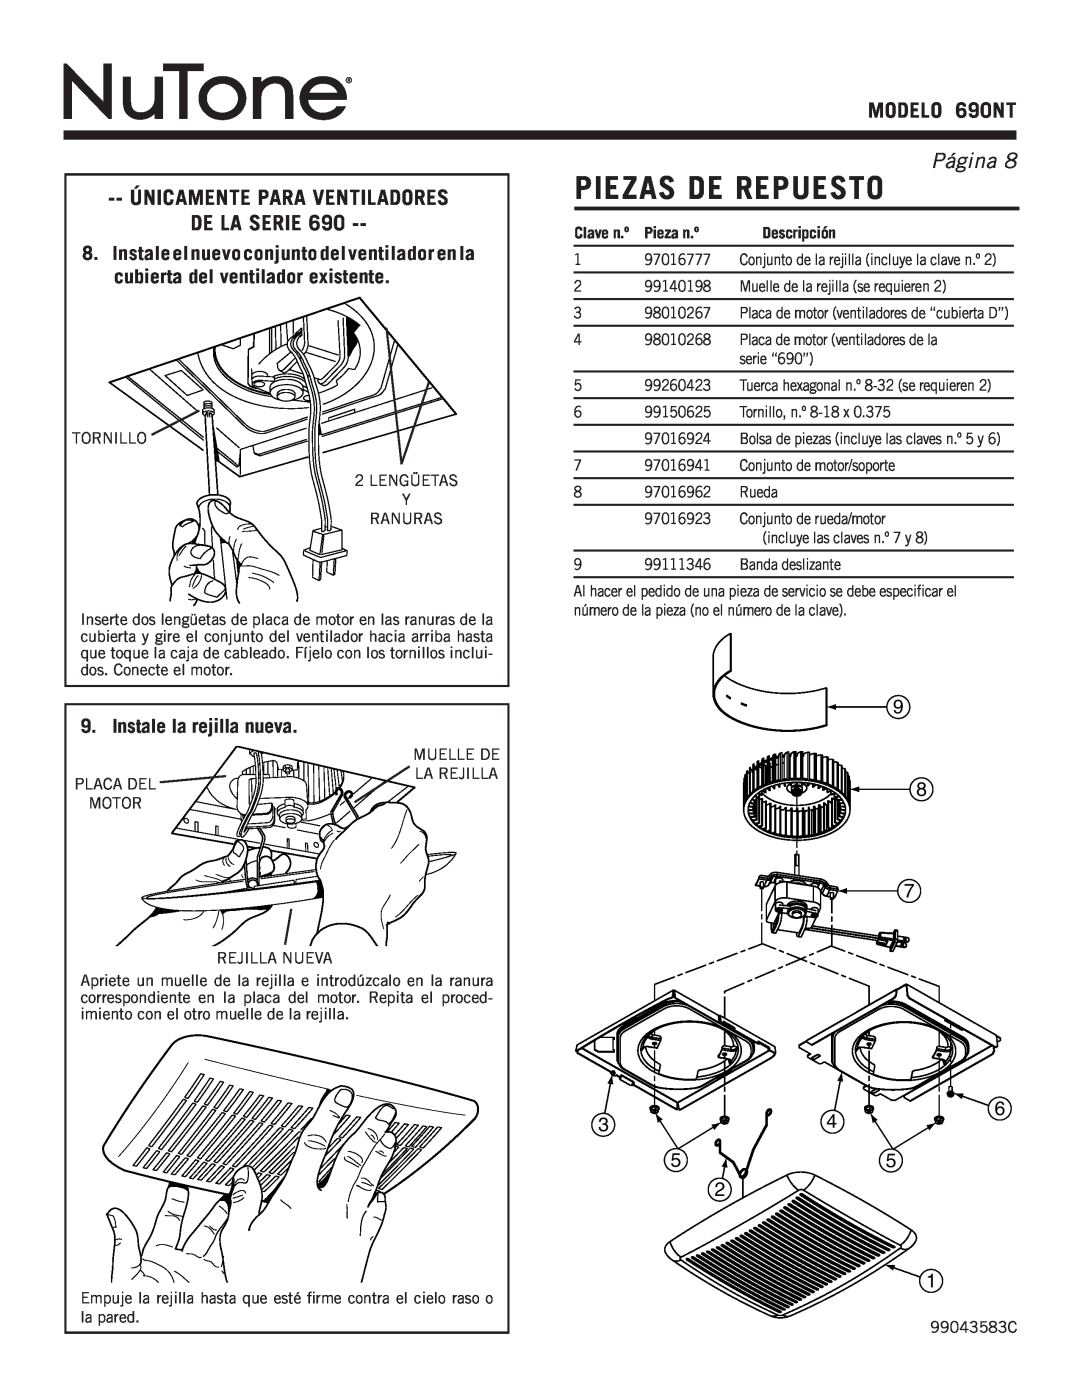 NuTone Piezas De Repuesto, modelO 690NT, Página , Únicamente Para Ventiladores De La Serie, Pieza n.º, Descripción 